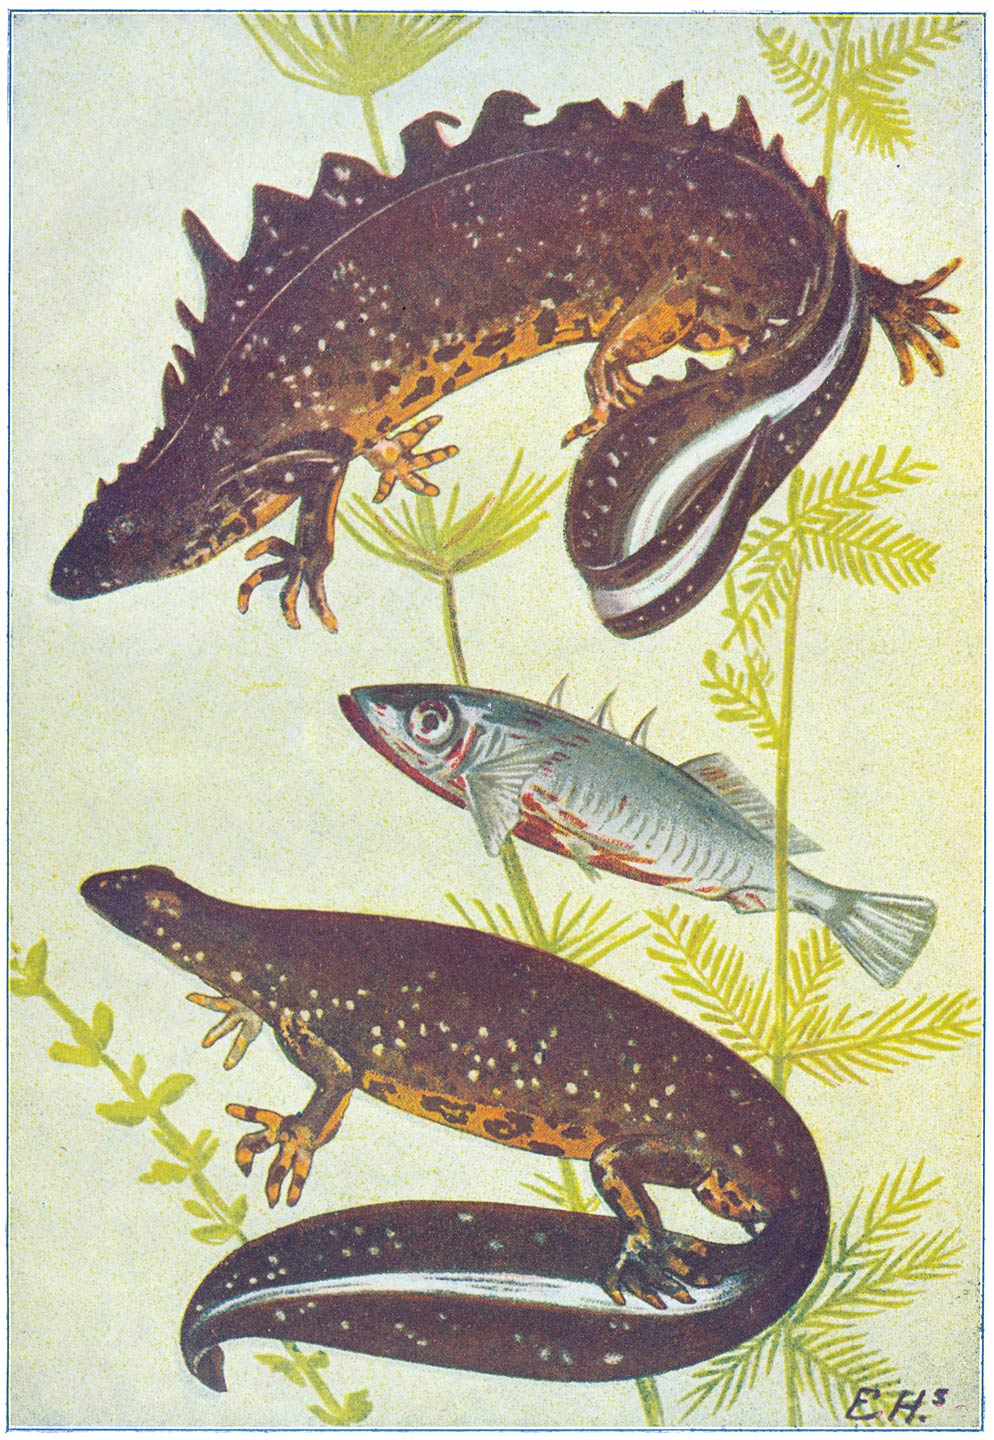 Kam-salamander of Groote Watersalamander. Het mannetje boven, pronkend voor het wijfje. In het midden een driestekelig stekelbaarsje in ’t prachtkleed.